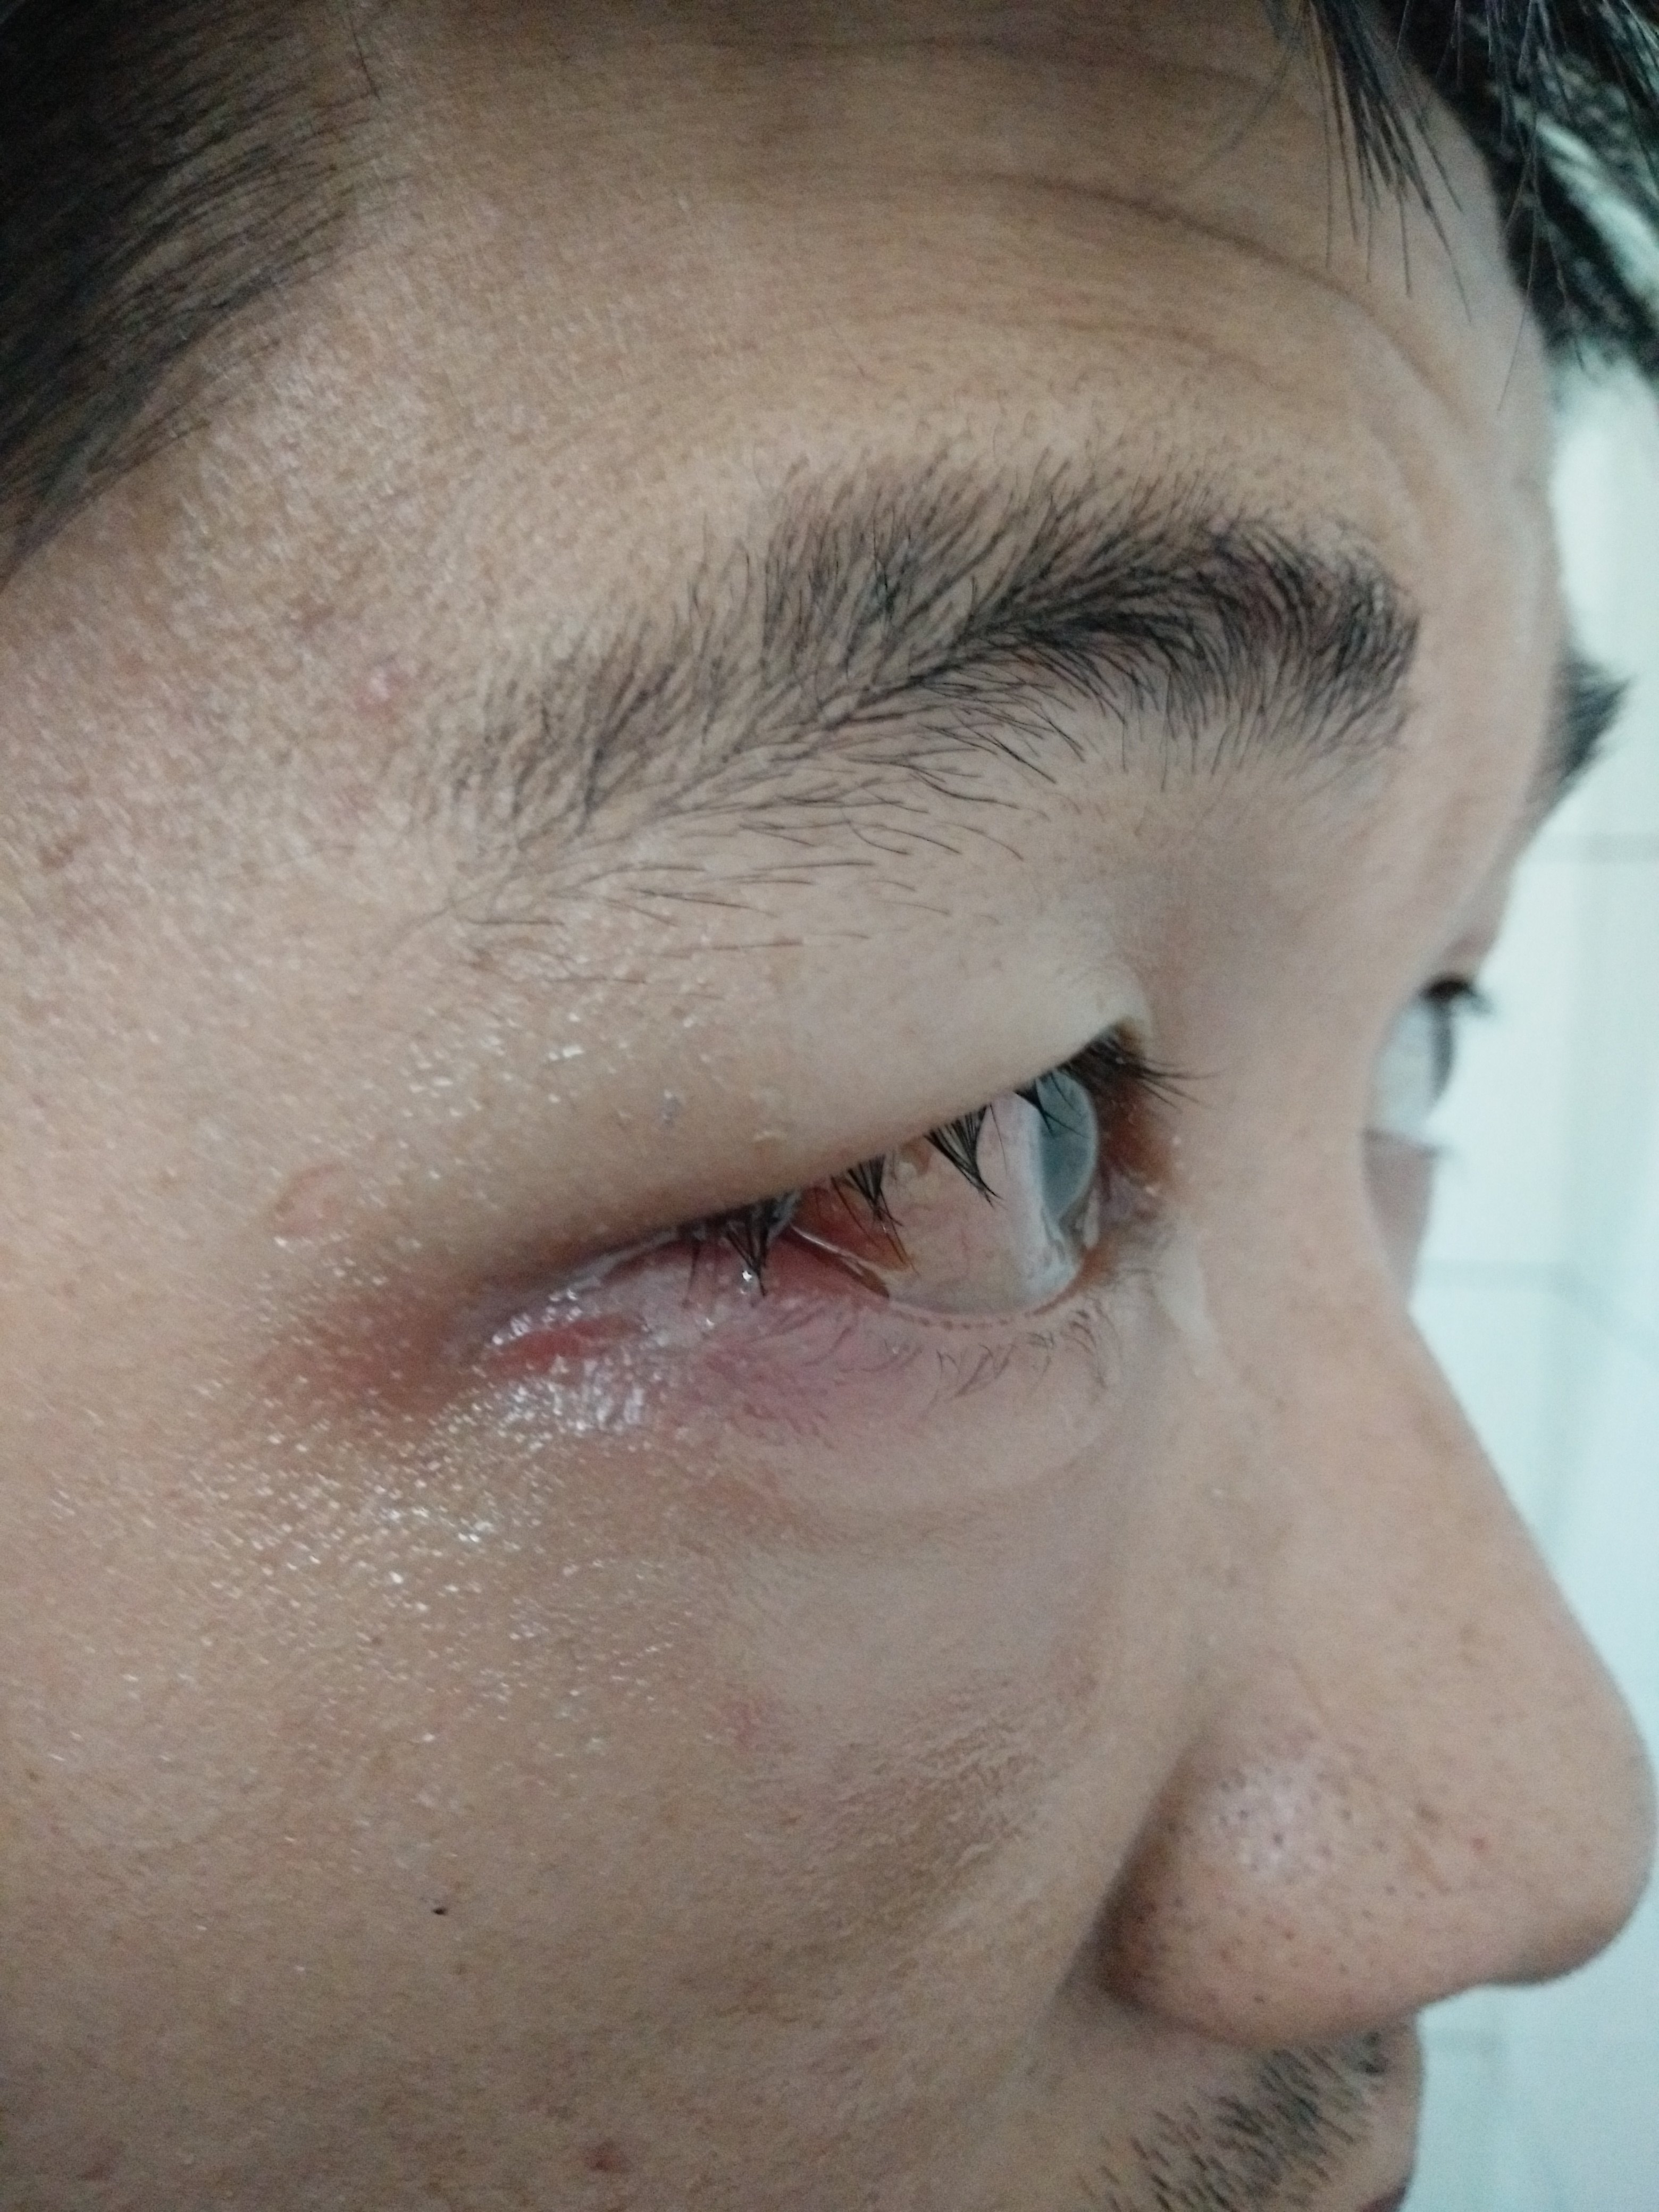 2018/12/28外伤导致的眶蜂窝织炎,眼内炎,眼球破裂伤,眼睑脓肿.